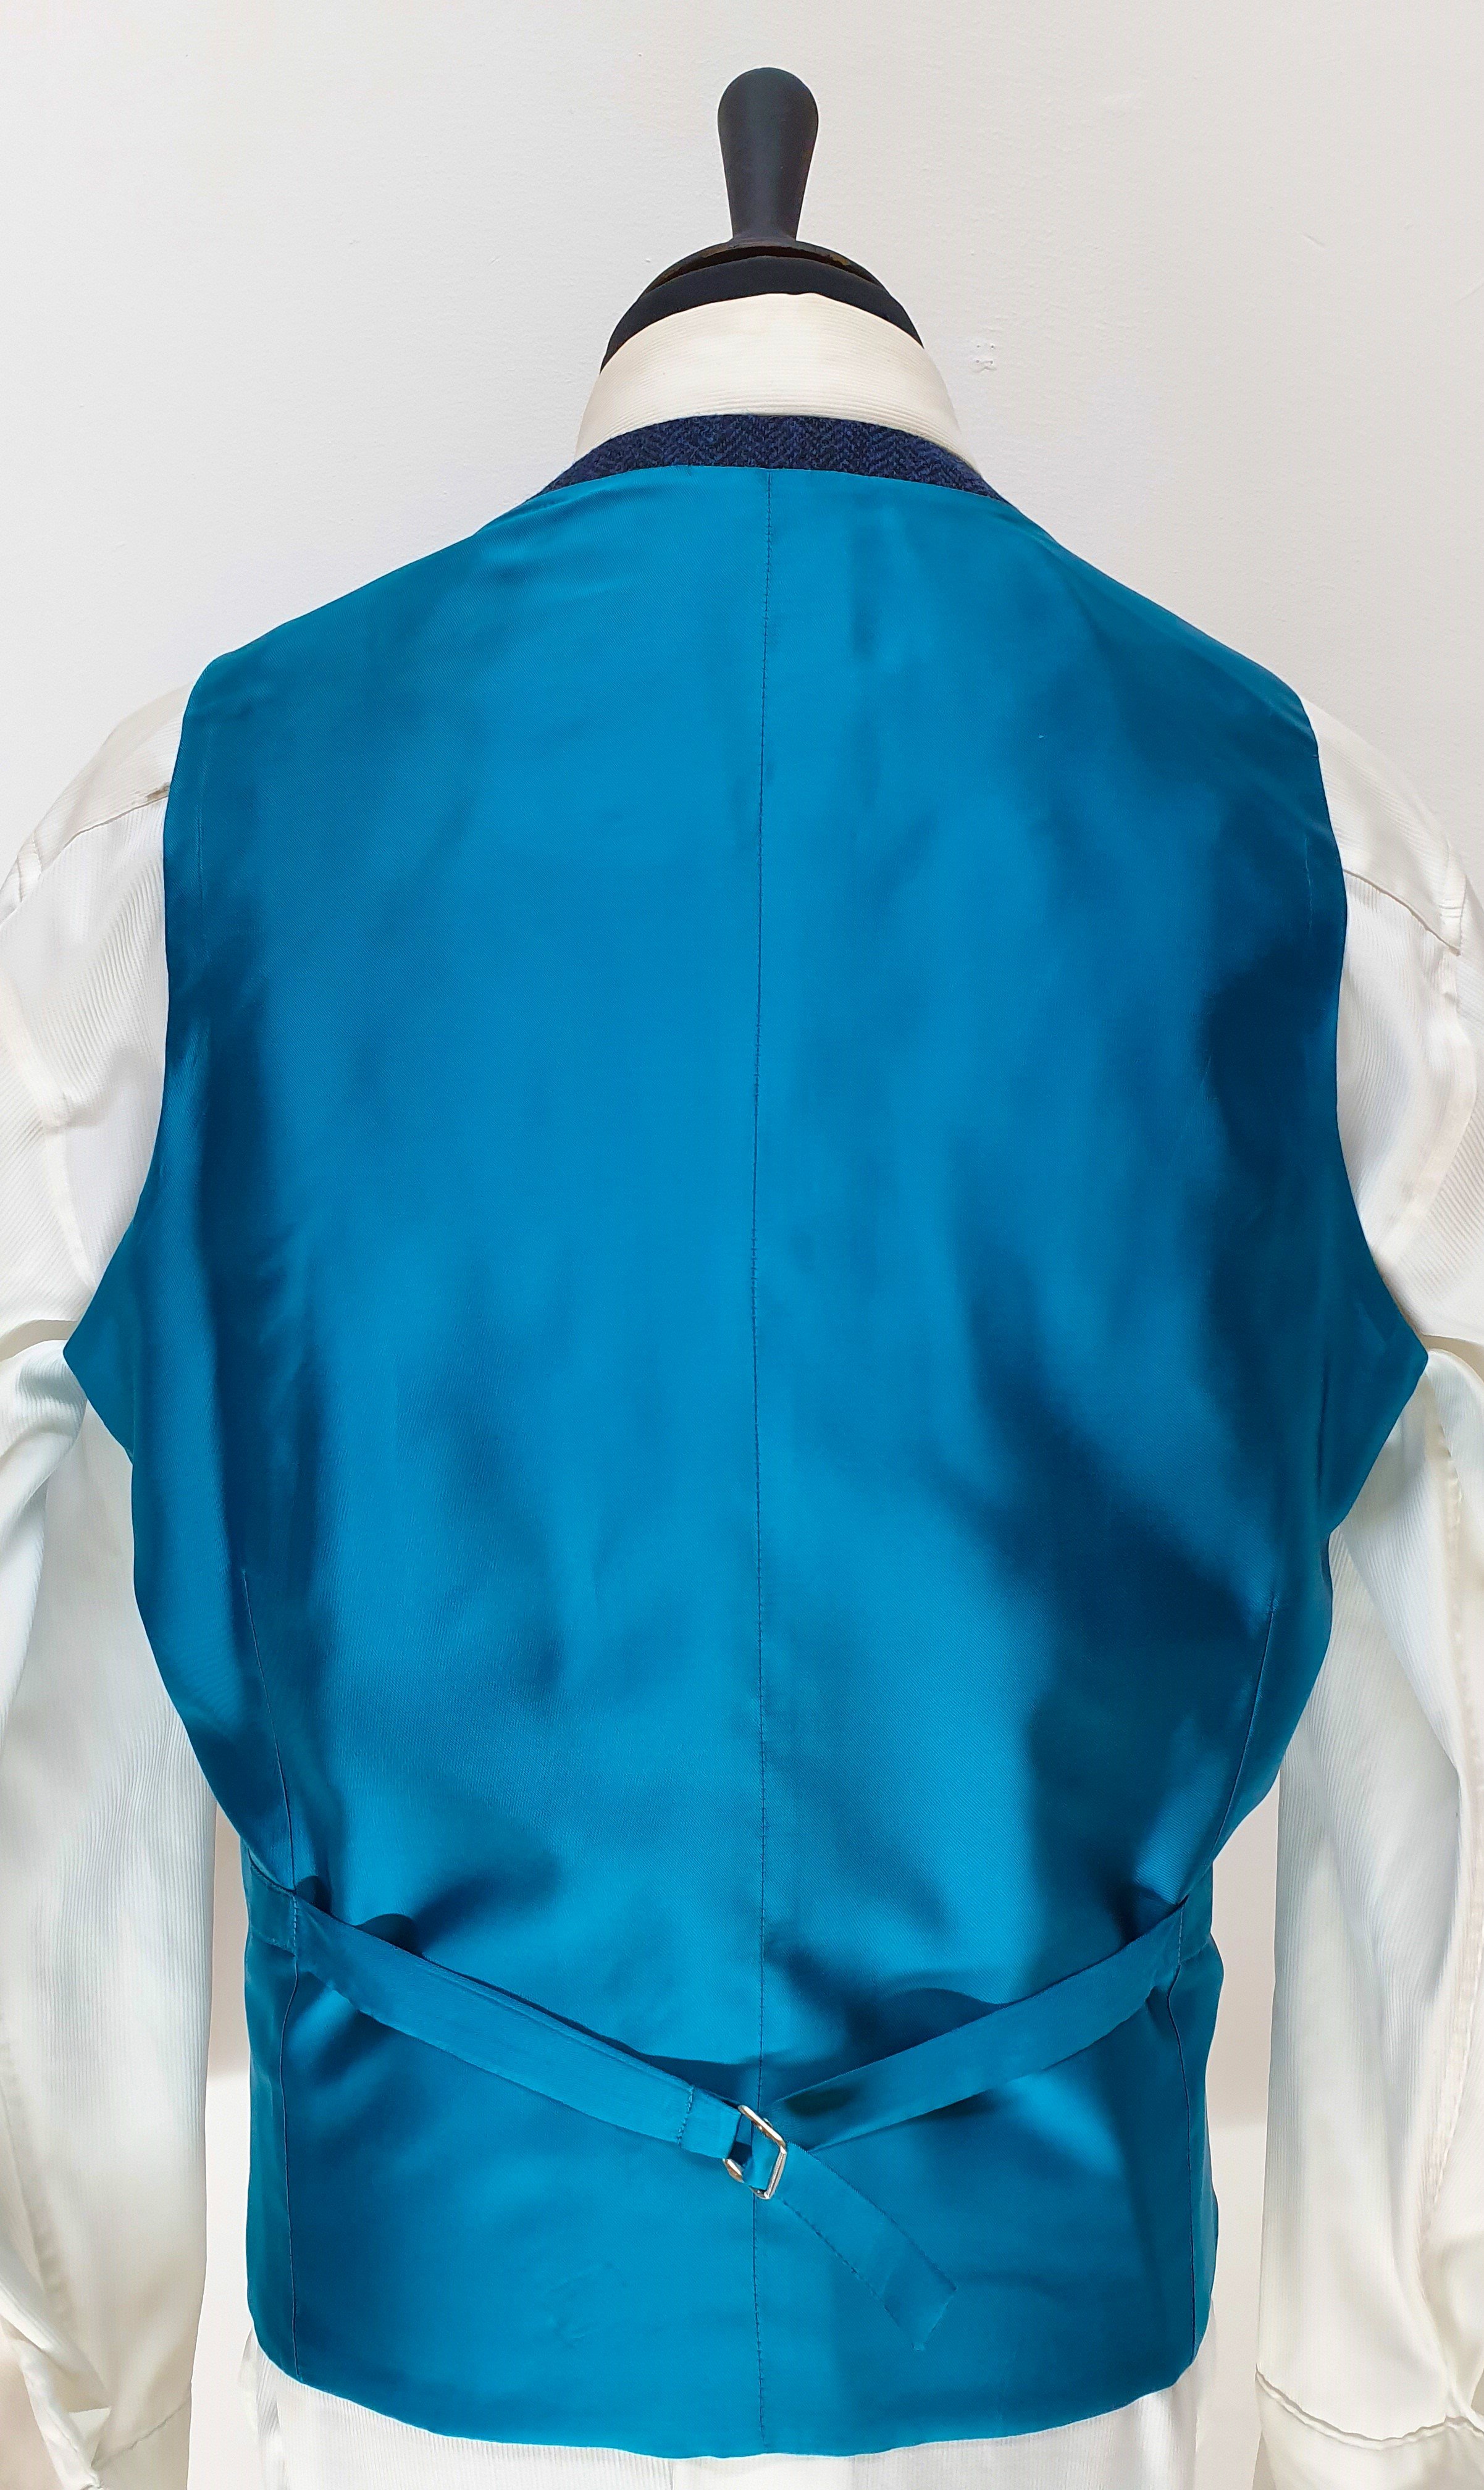 3 Piece Suit in Holland and Sherry Blue Herringbone Tweed (4).jpg